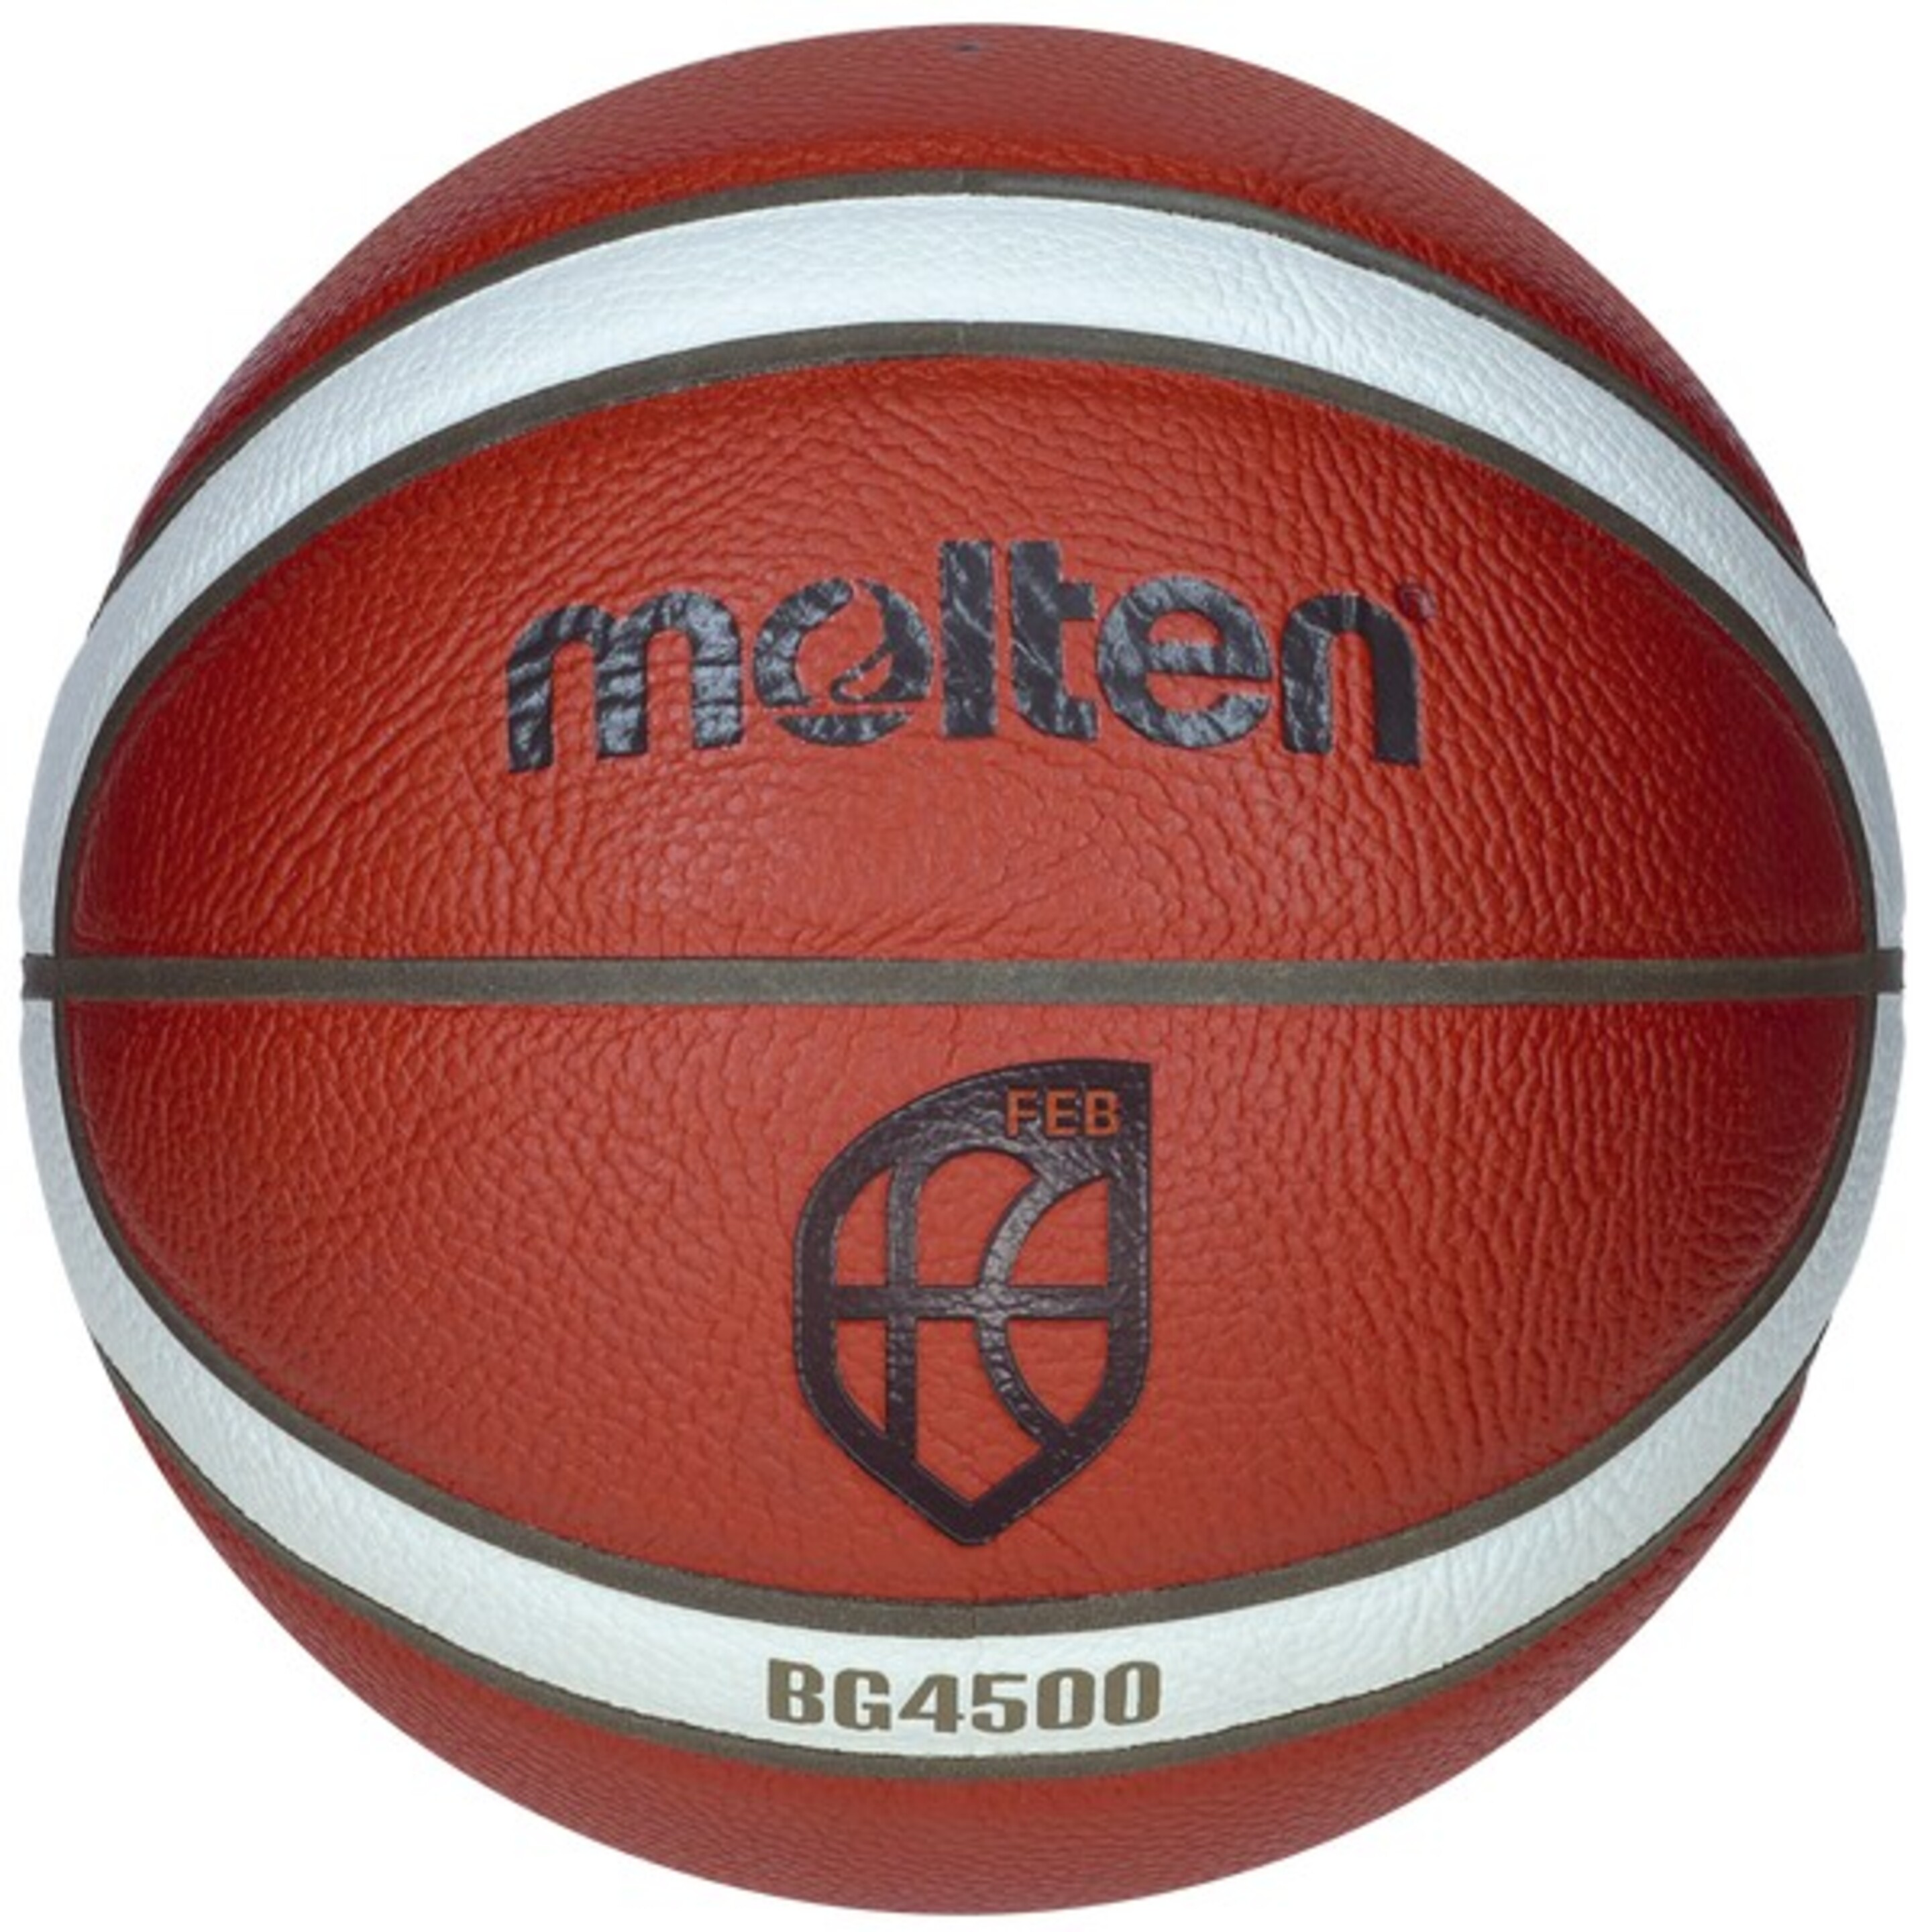 Balón De Baloncesto Molten B7g4500 Cuero Sintético - naranja - 